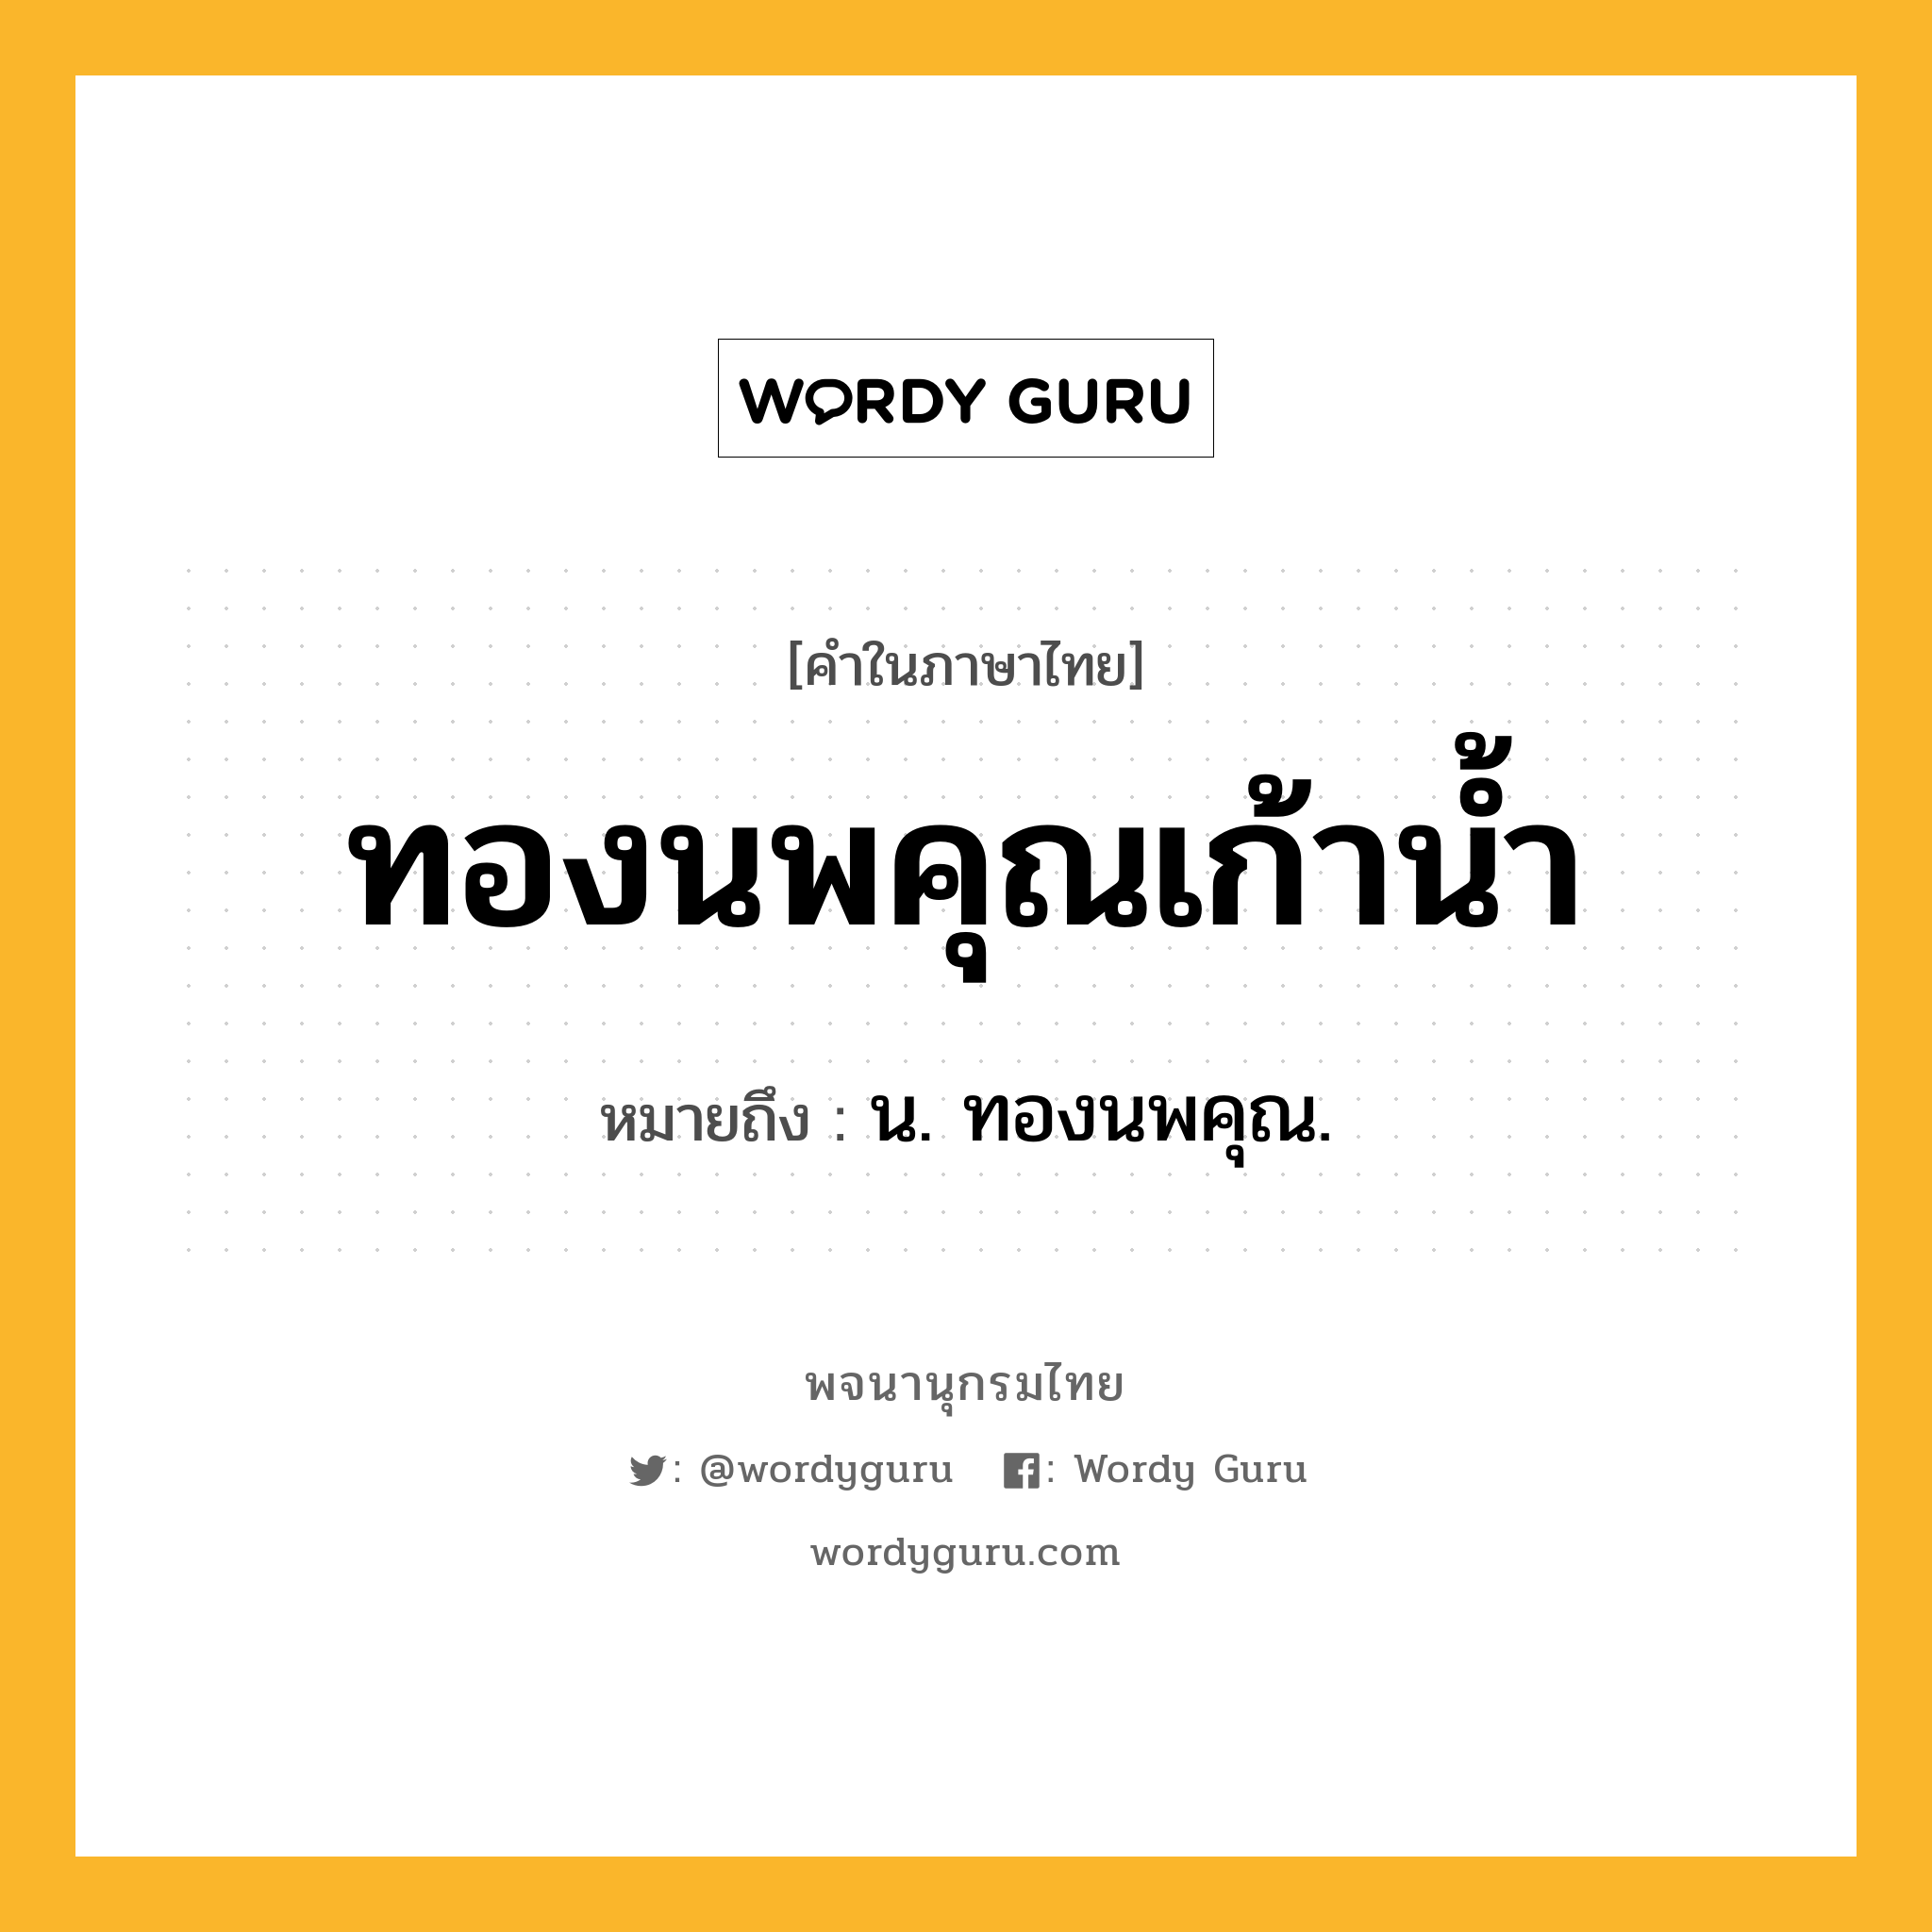 ทองนพคุณเก้าน้ำ หมายถึงอะไร?, คำในภาษาไทย ทองนพคุณเก้าน้ำ หมายถึง น. ทองนพคุณ.